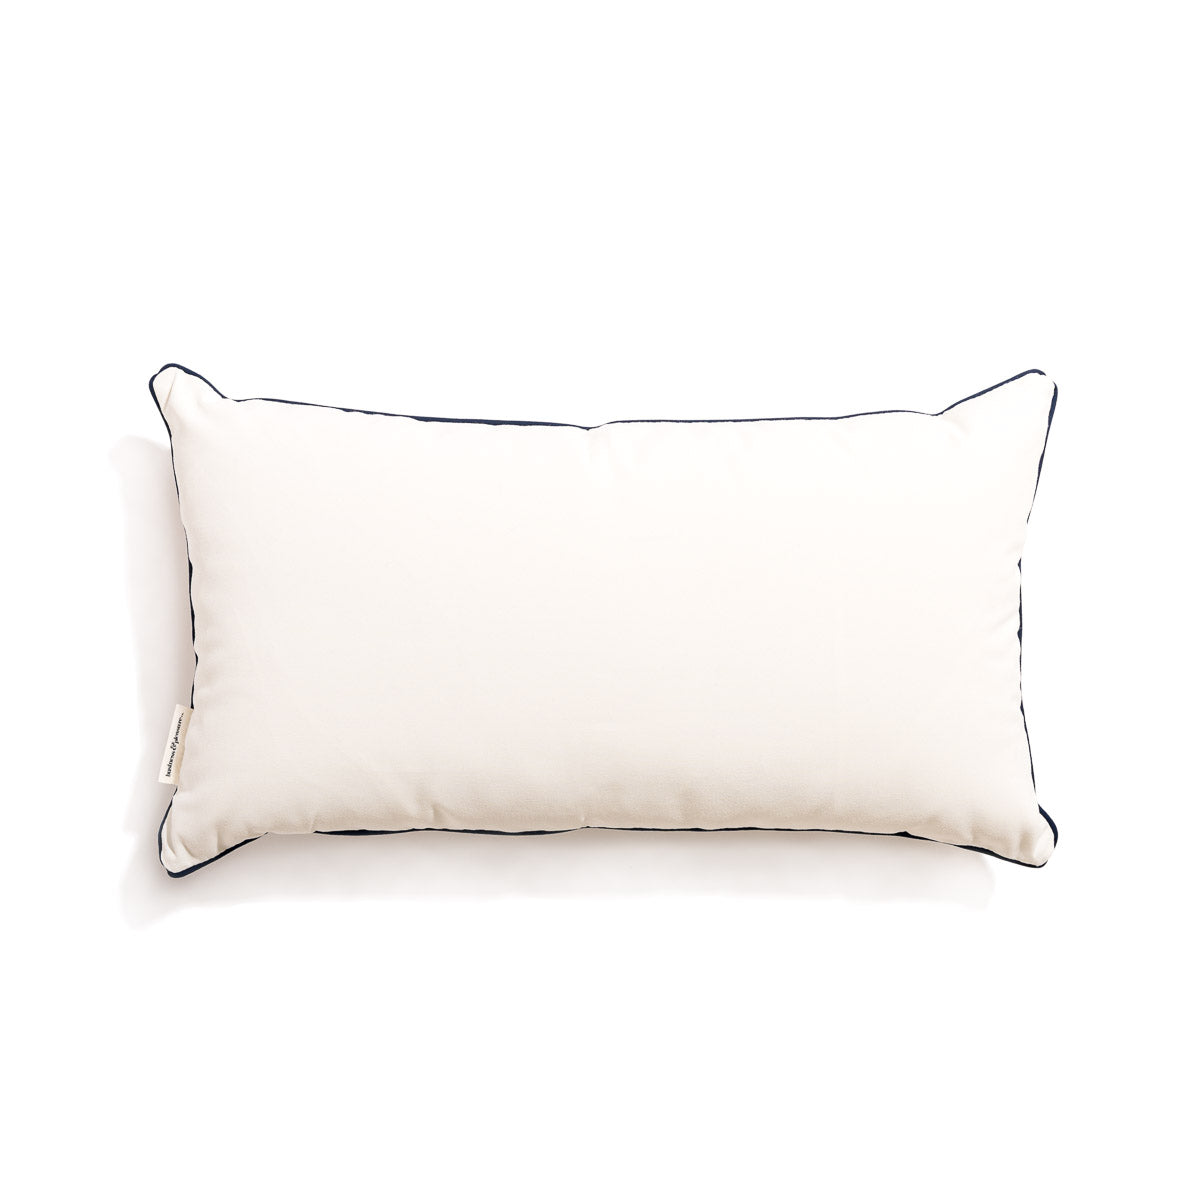 The Rectangle Throw Pillow - Rivie White